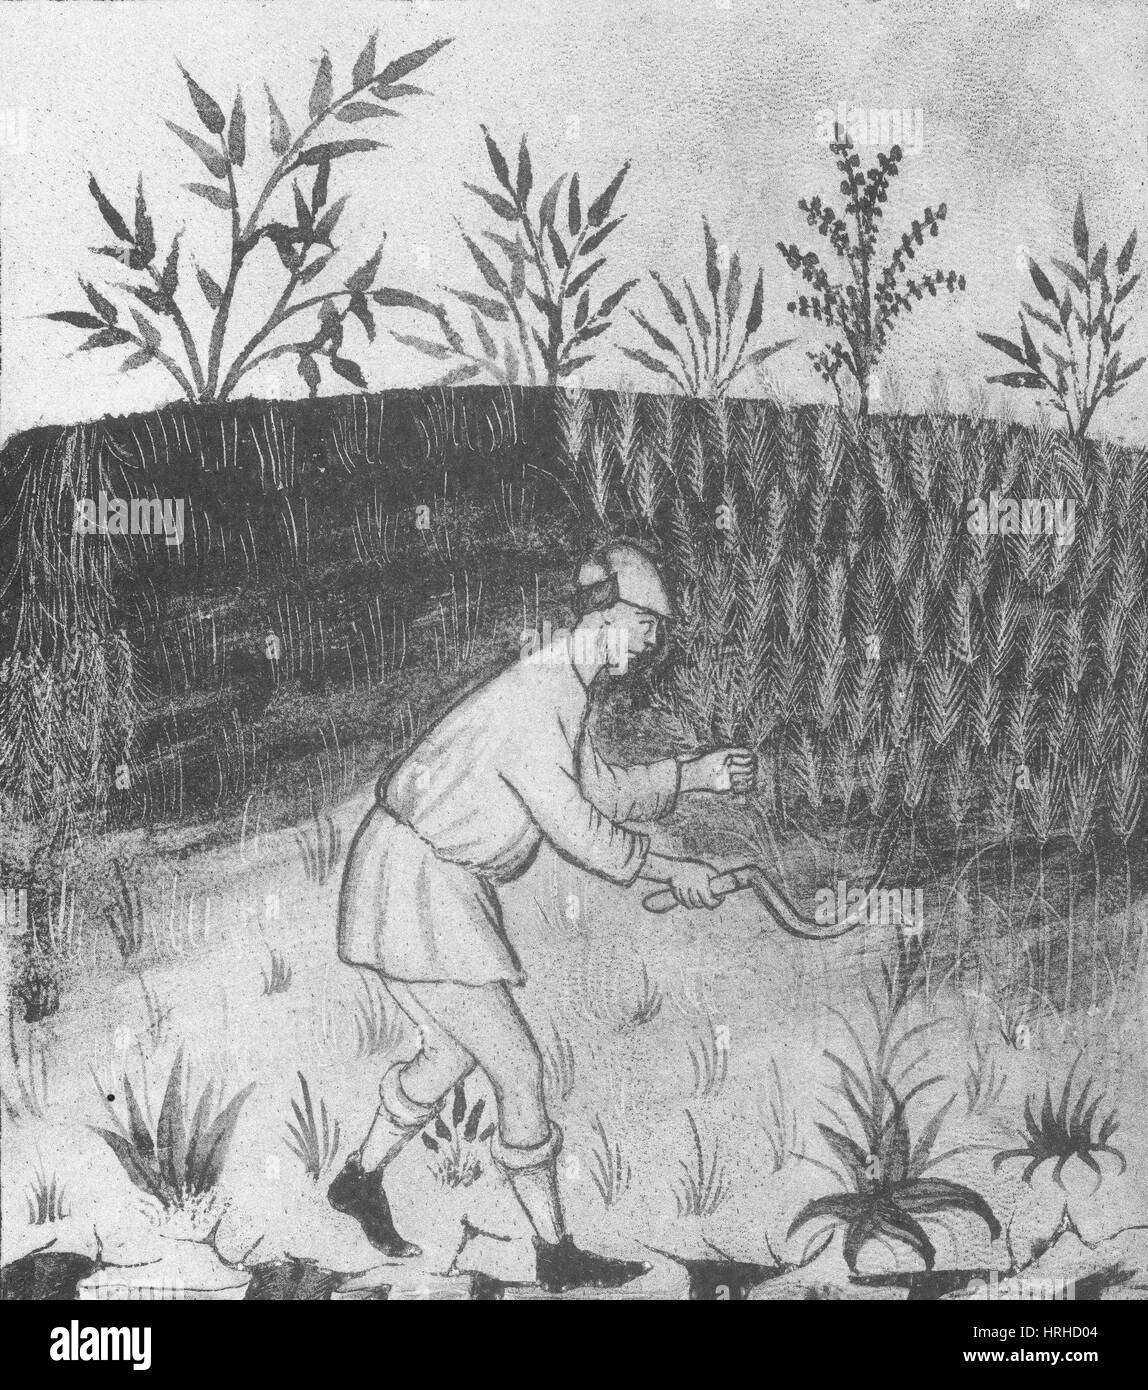 L'agriculture, de l'agriculture médiévale Banque D'Images